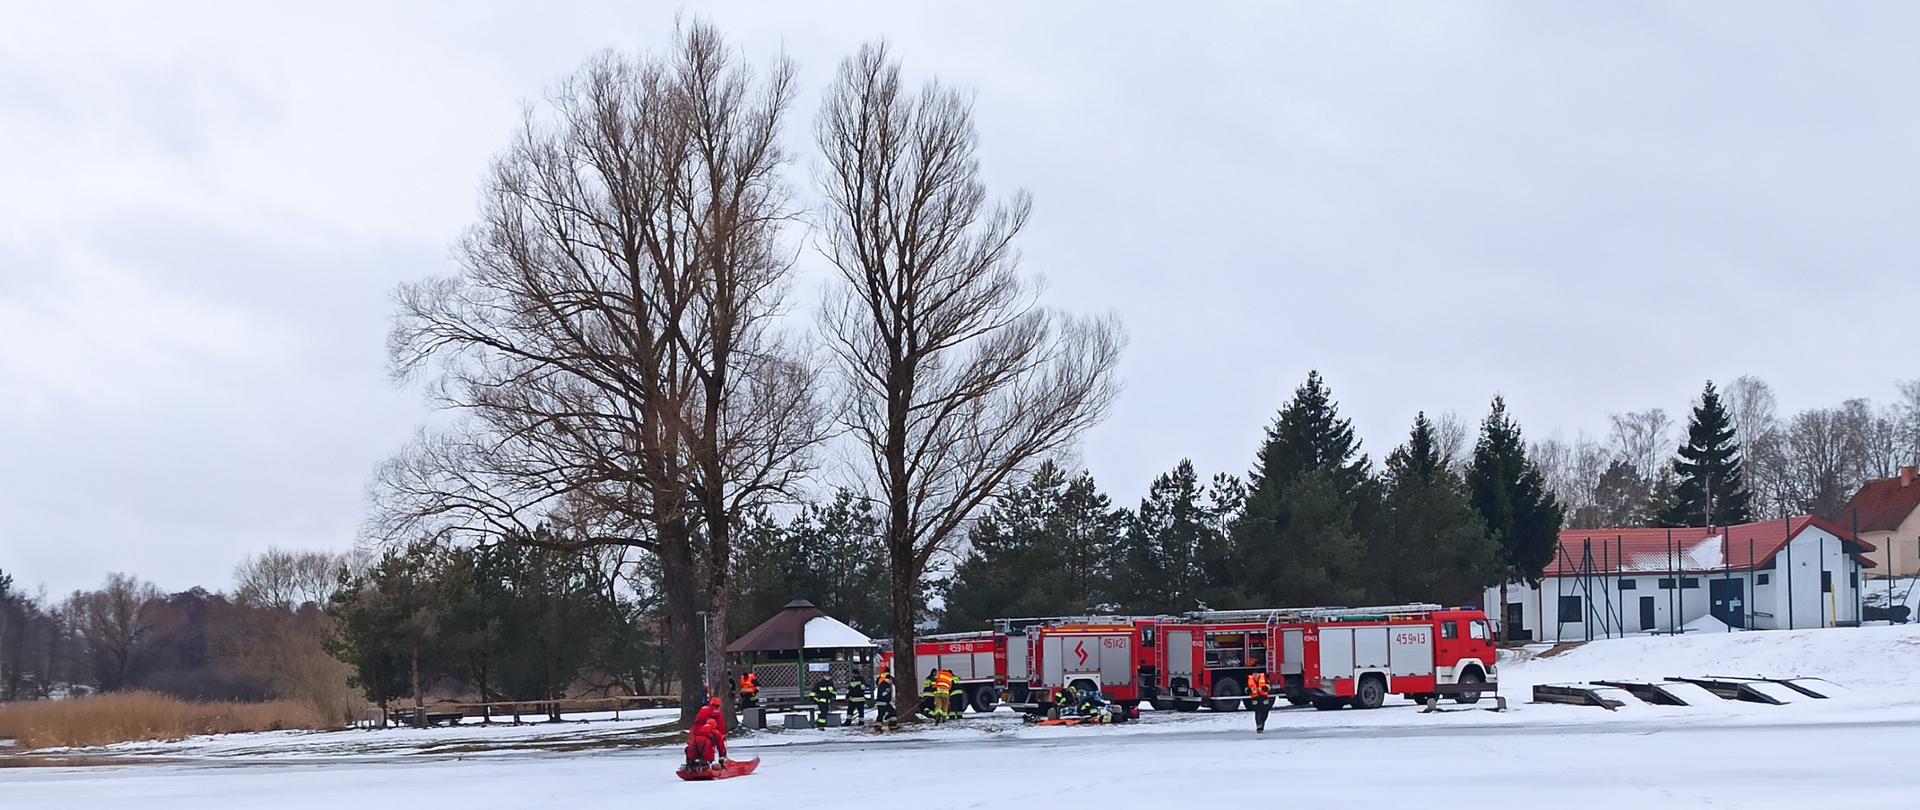 Zdjęcie przedstawia uchwycony z oddali obraz dwóch ratowników na lodzie (odpowiednio zabezpieczonych i wyposażonych w sanie lodowe) na tle strażaków i czterech pojazdów pożarniczych